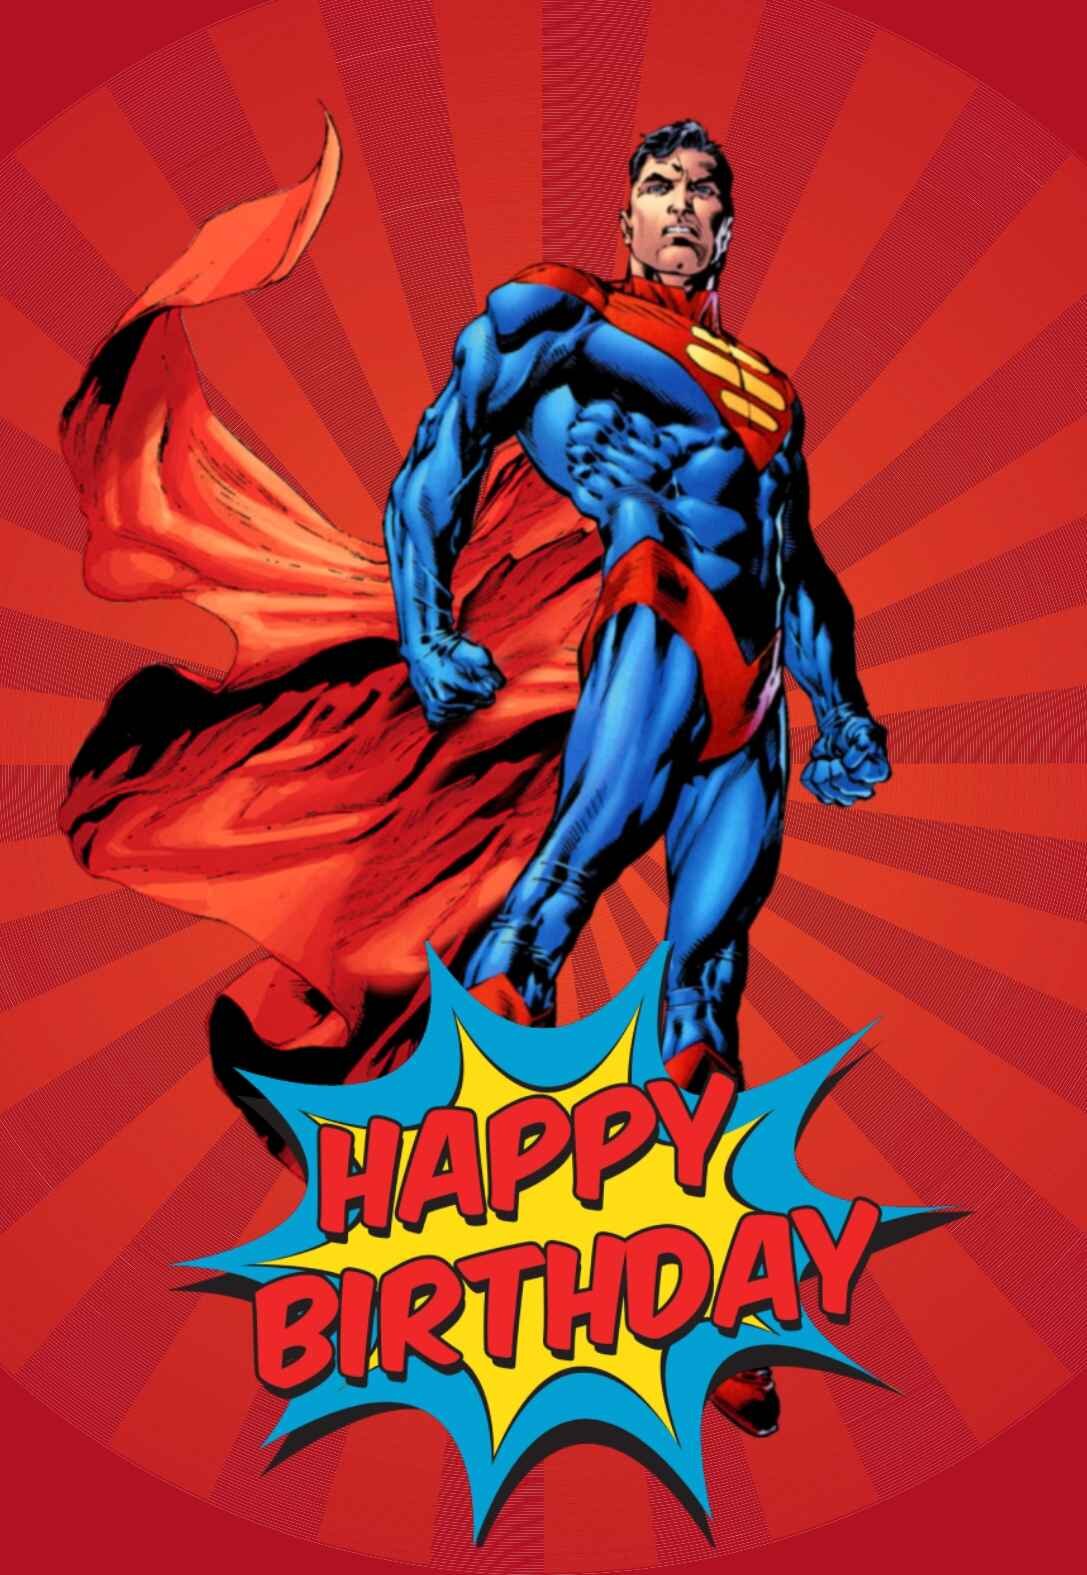 Free Printable Superhero Birthday Card